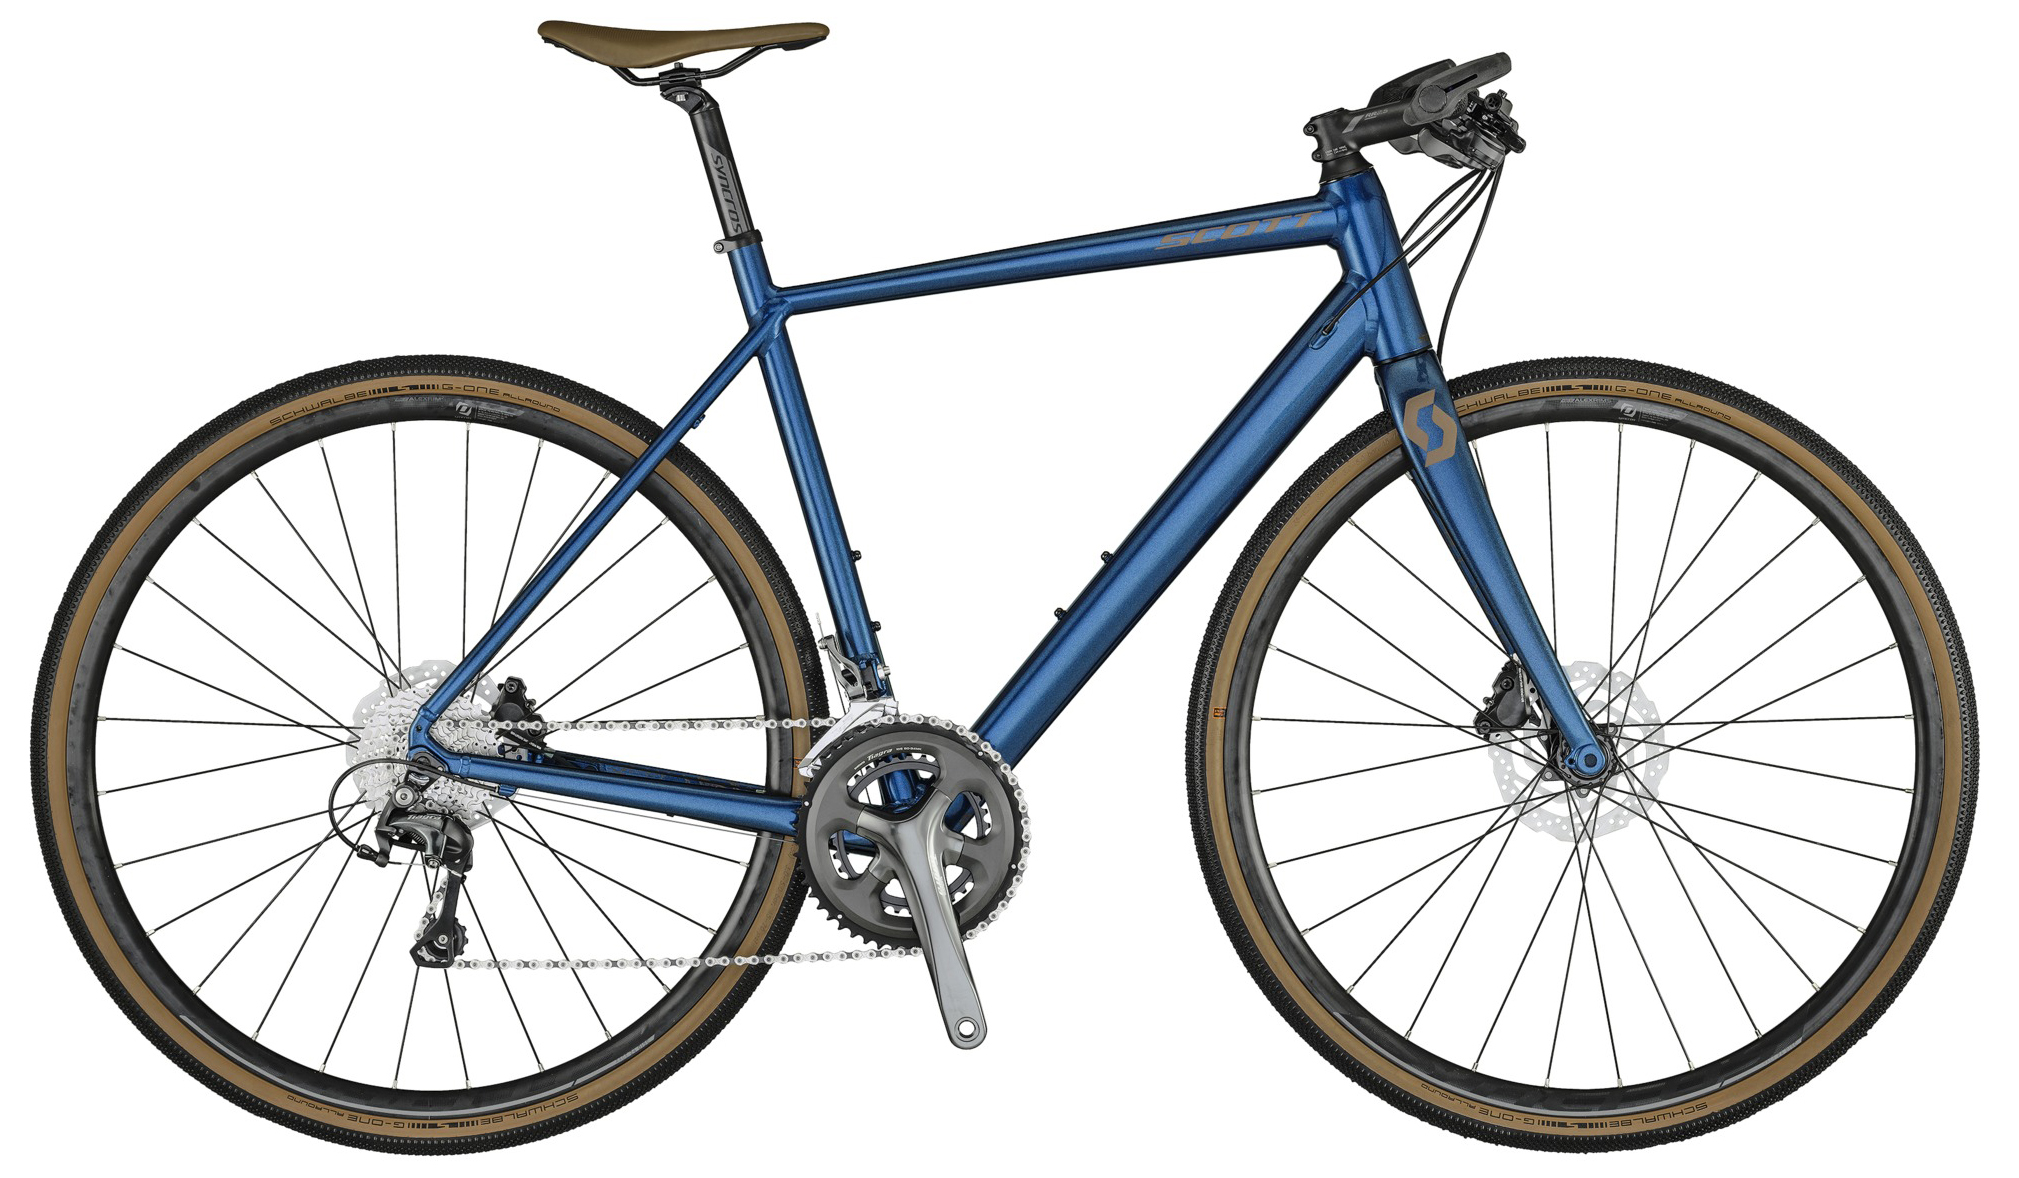  Отзывы о Городском велосипеде Scott Metrix 20 2021